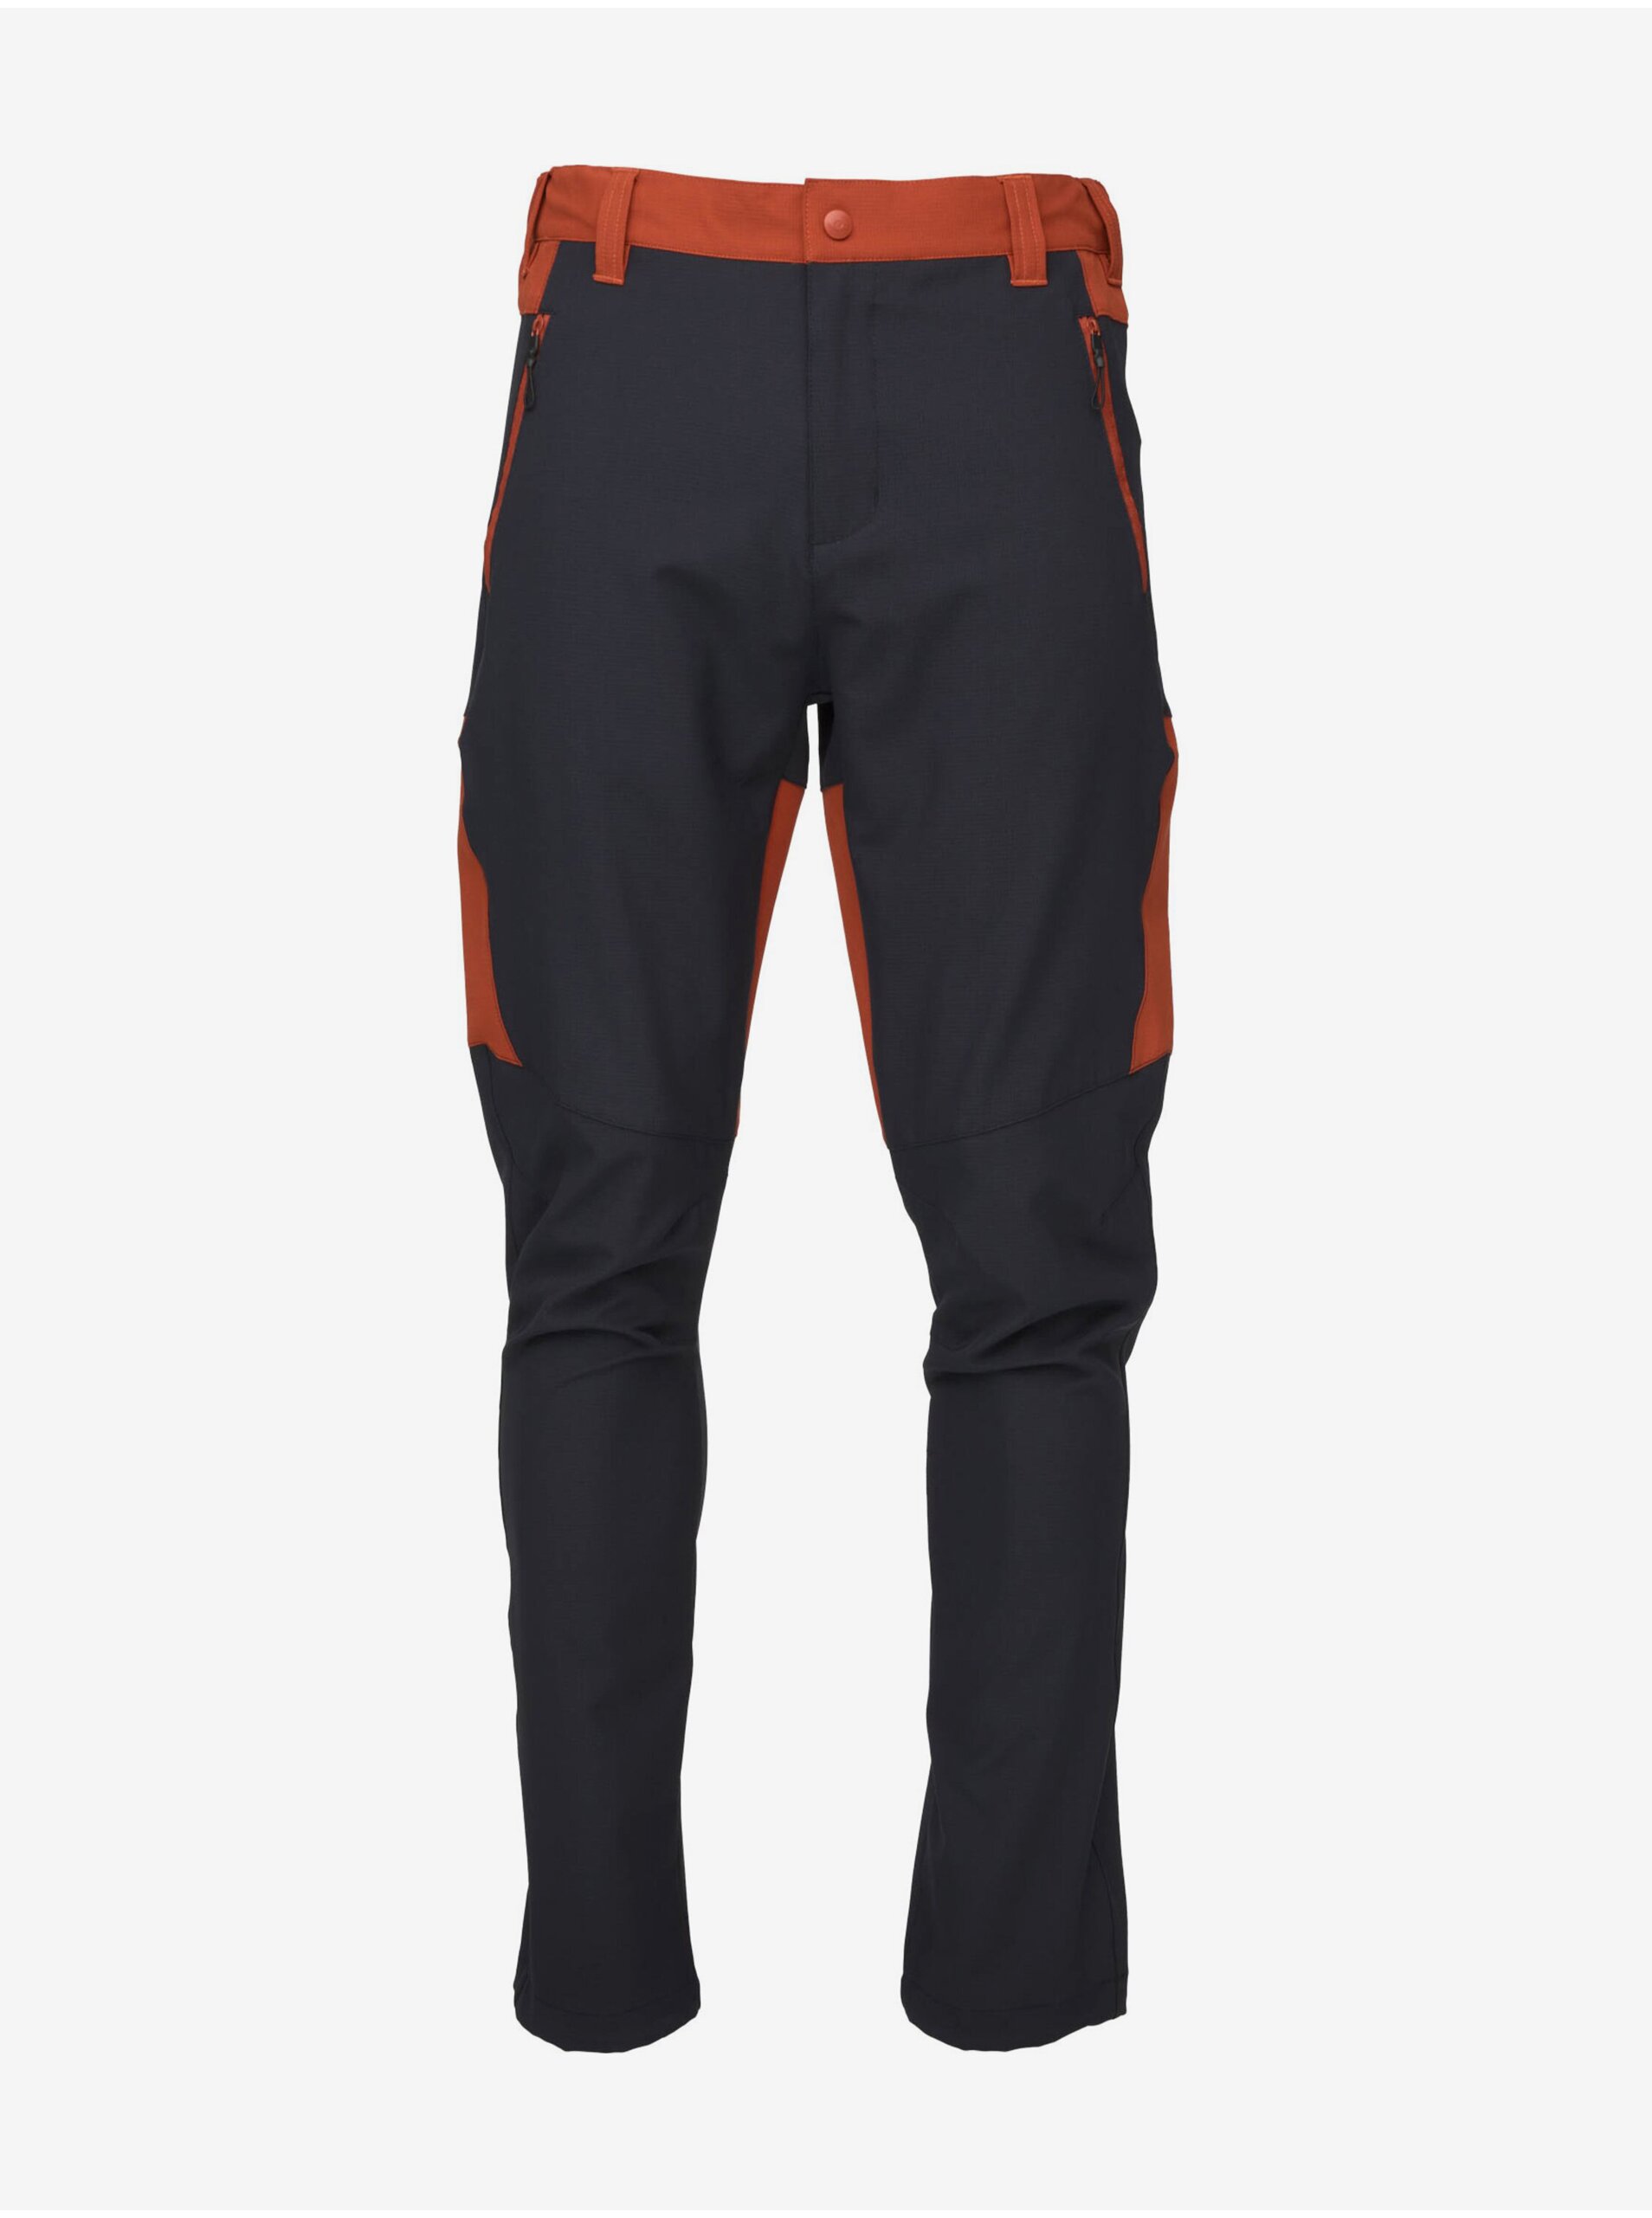 E-shop Oranžovo-modré pánské outdoorové kalhoty LOAP UZMUL